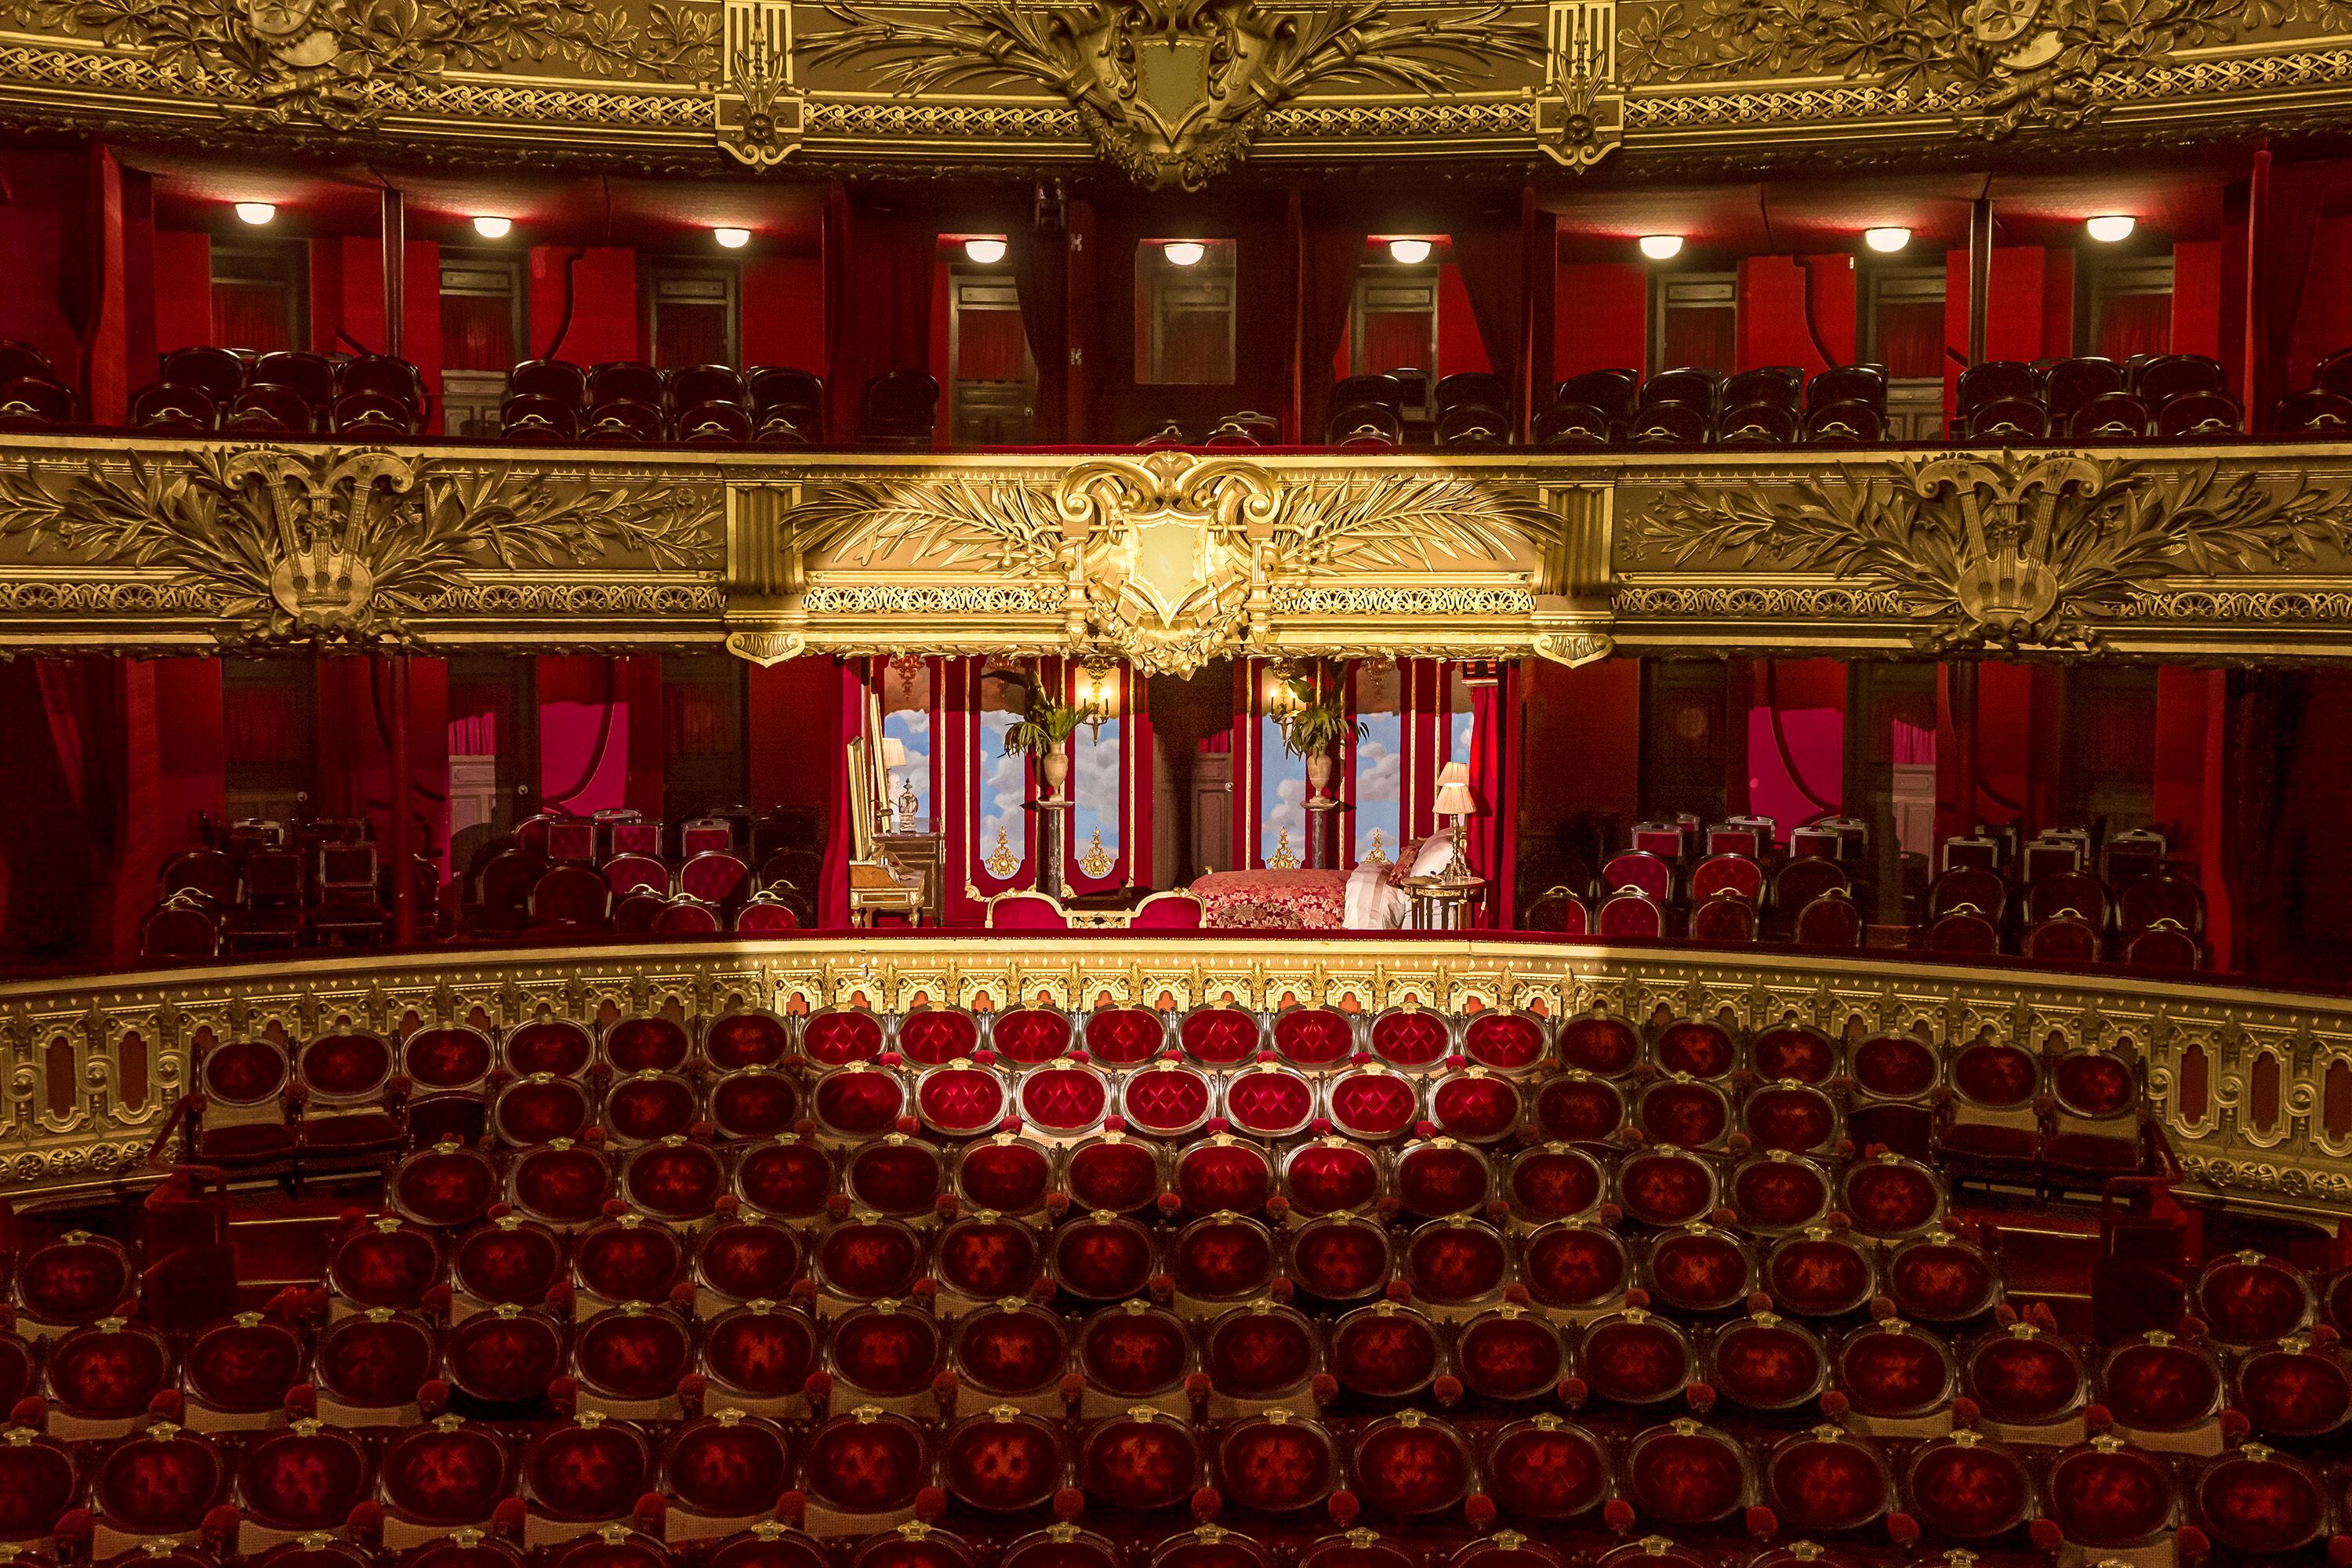 Vista desde el escenario del Palco de Honor, del Palais Garnier.